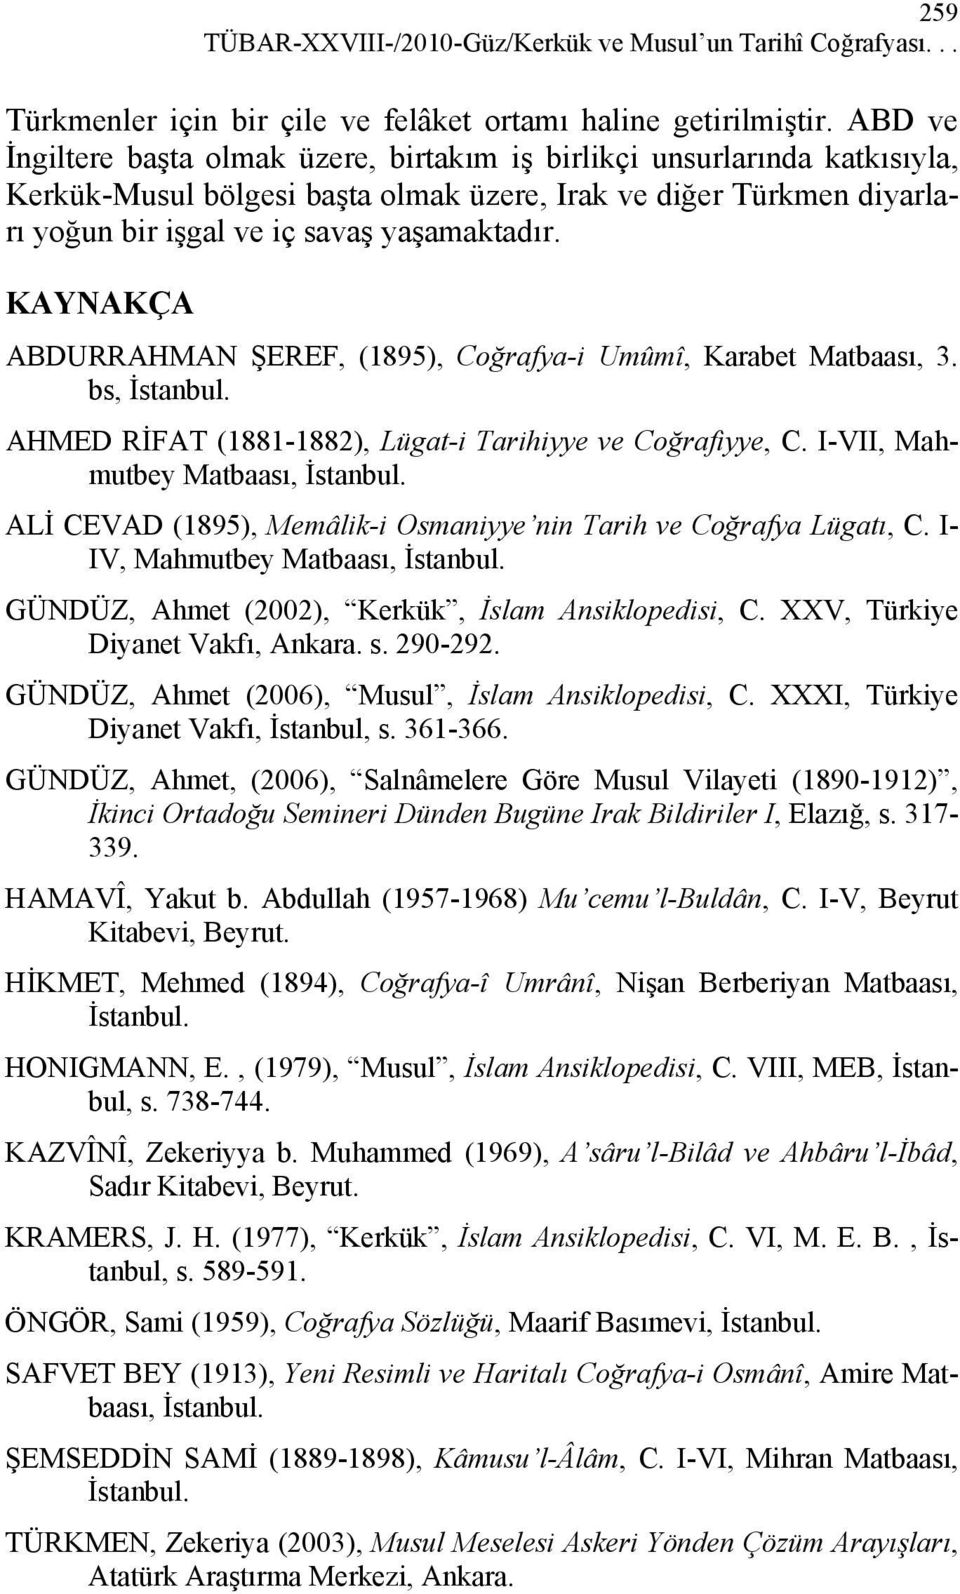 KAYNAKÇA ABDURRAHMAN ŞEREF, (1895), Coğrafya-i Umûmî, Karabet Matbaası, 3. bs, İstanbul. AHMED RİFAT (1881-1882), Lügat-i Tarihiyye ve Coğrafiyye, C. I-VII, Mahmutbey Matbaası, İstanbul.